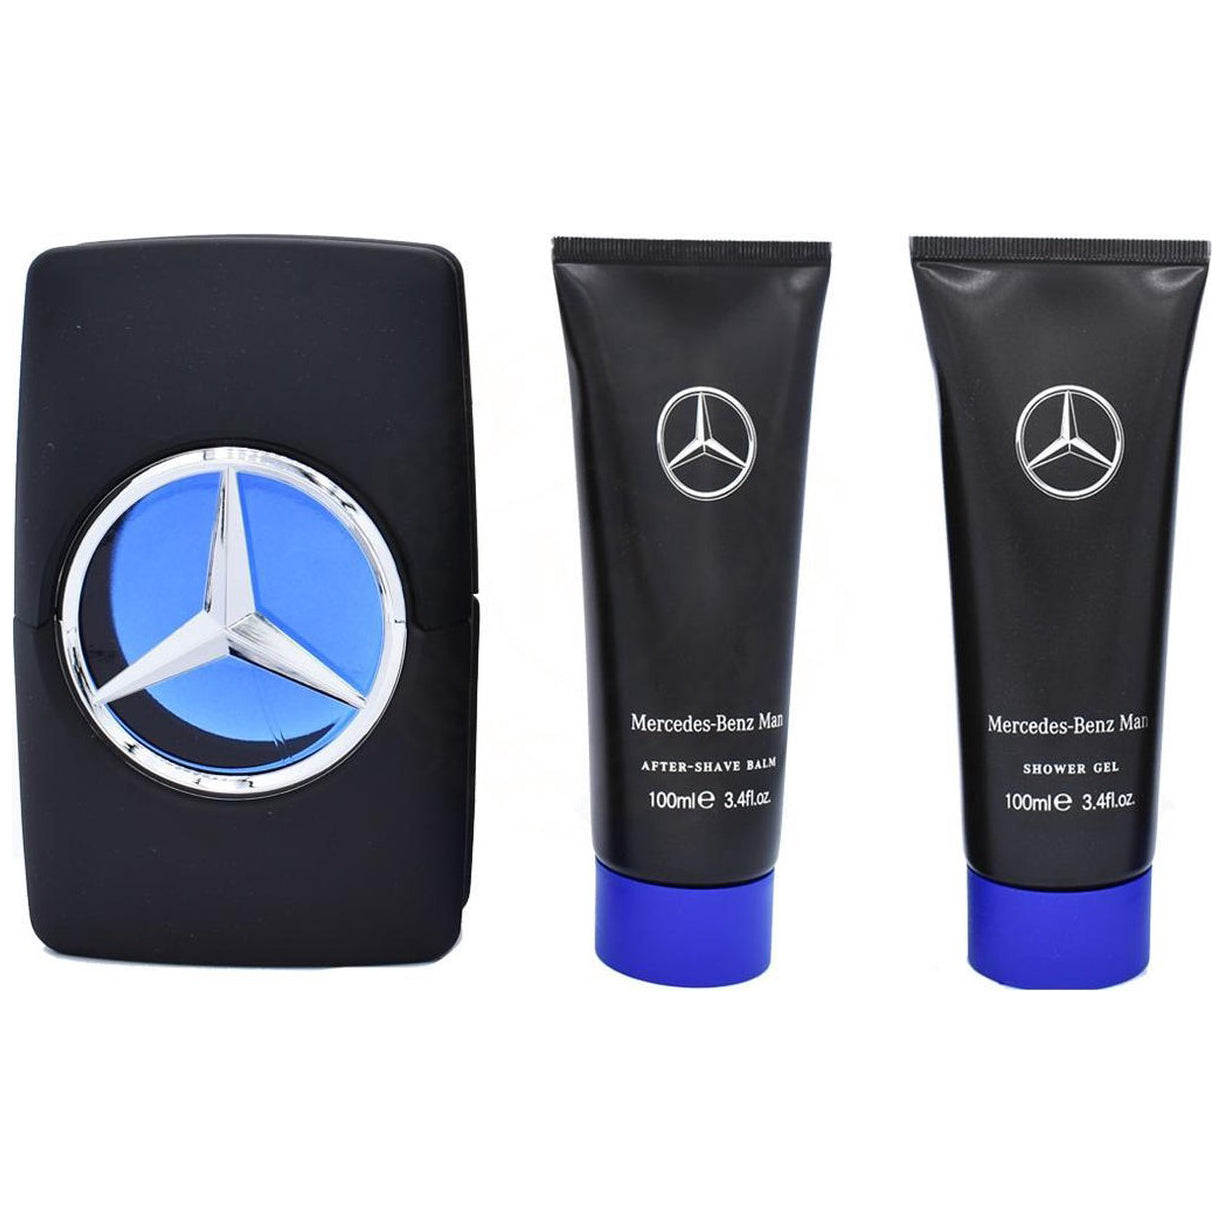 Mercedes-Benz Man perfumes